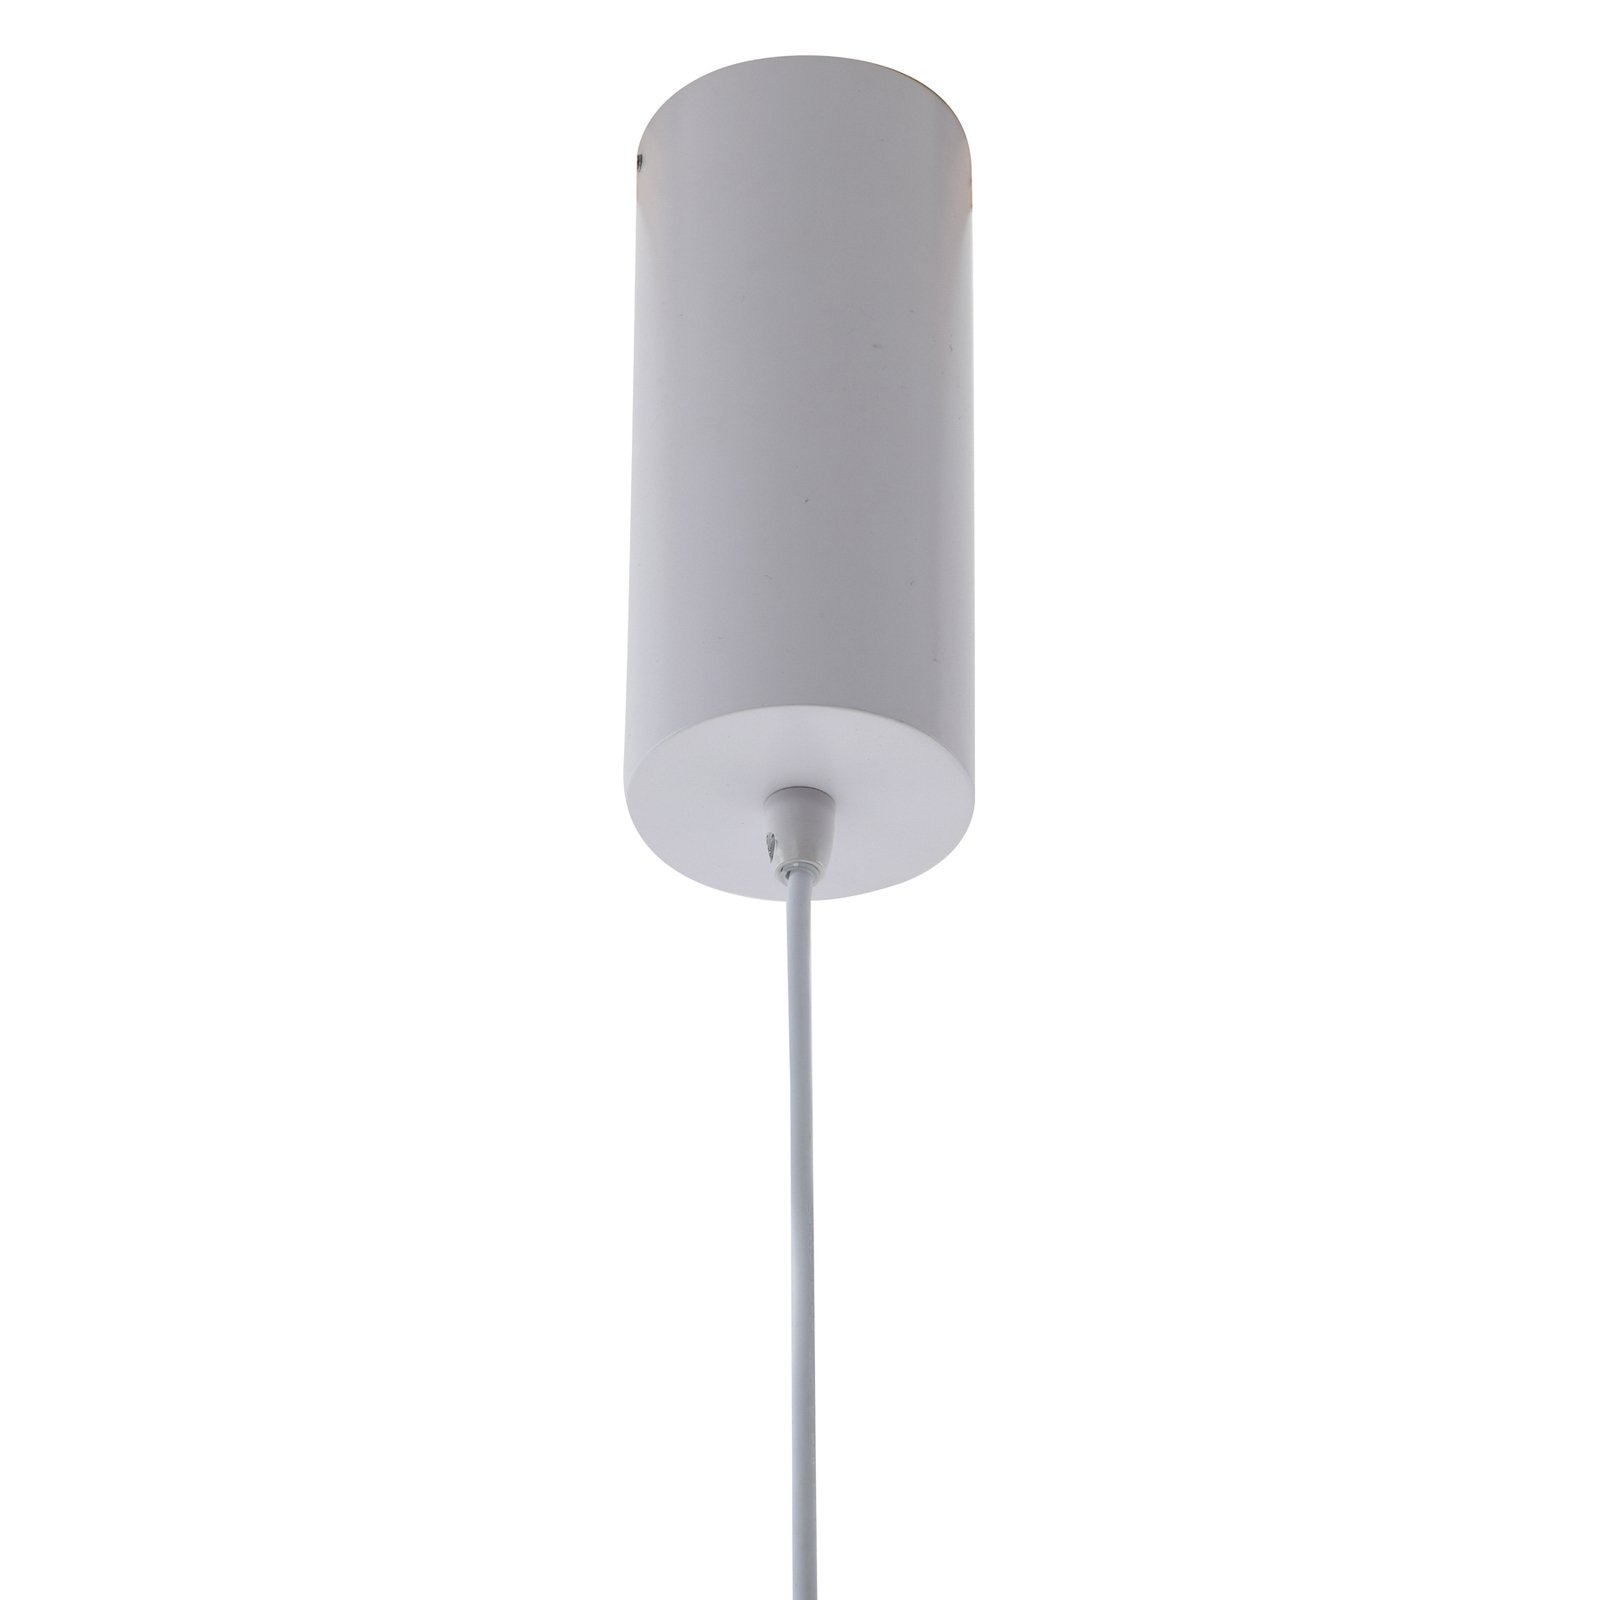 Lucande Orasa LED-es függőlámpa, üveg, fehér/tiszta, Ø 43 cm